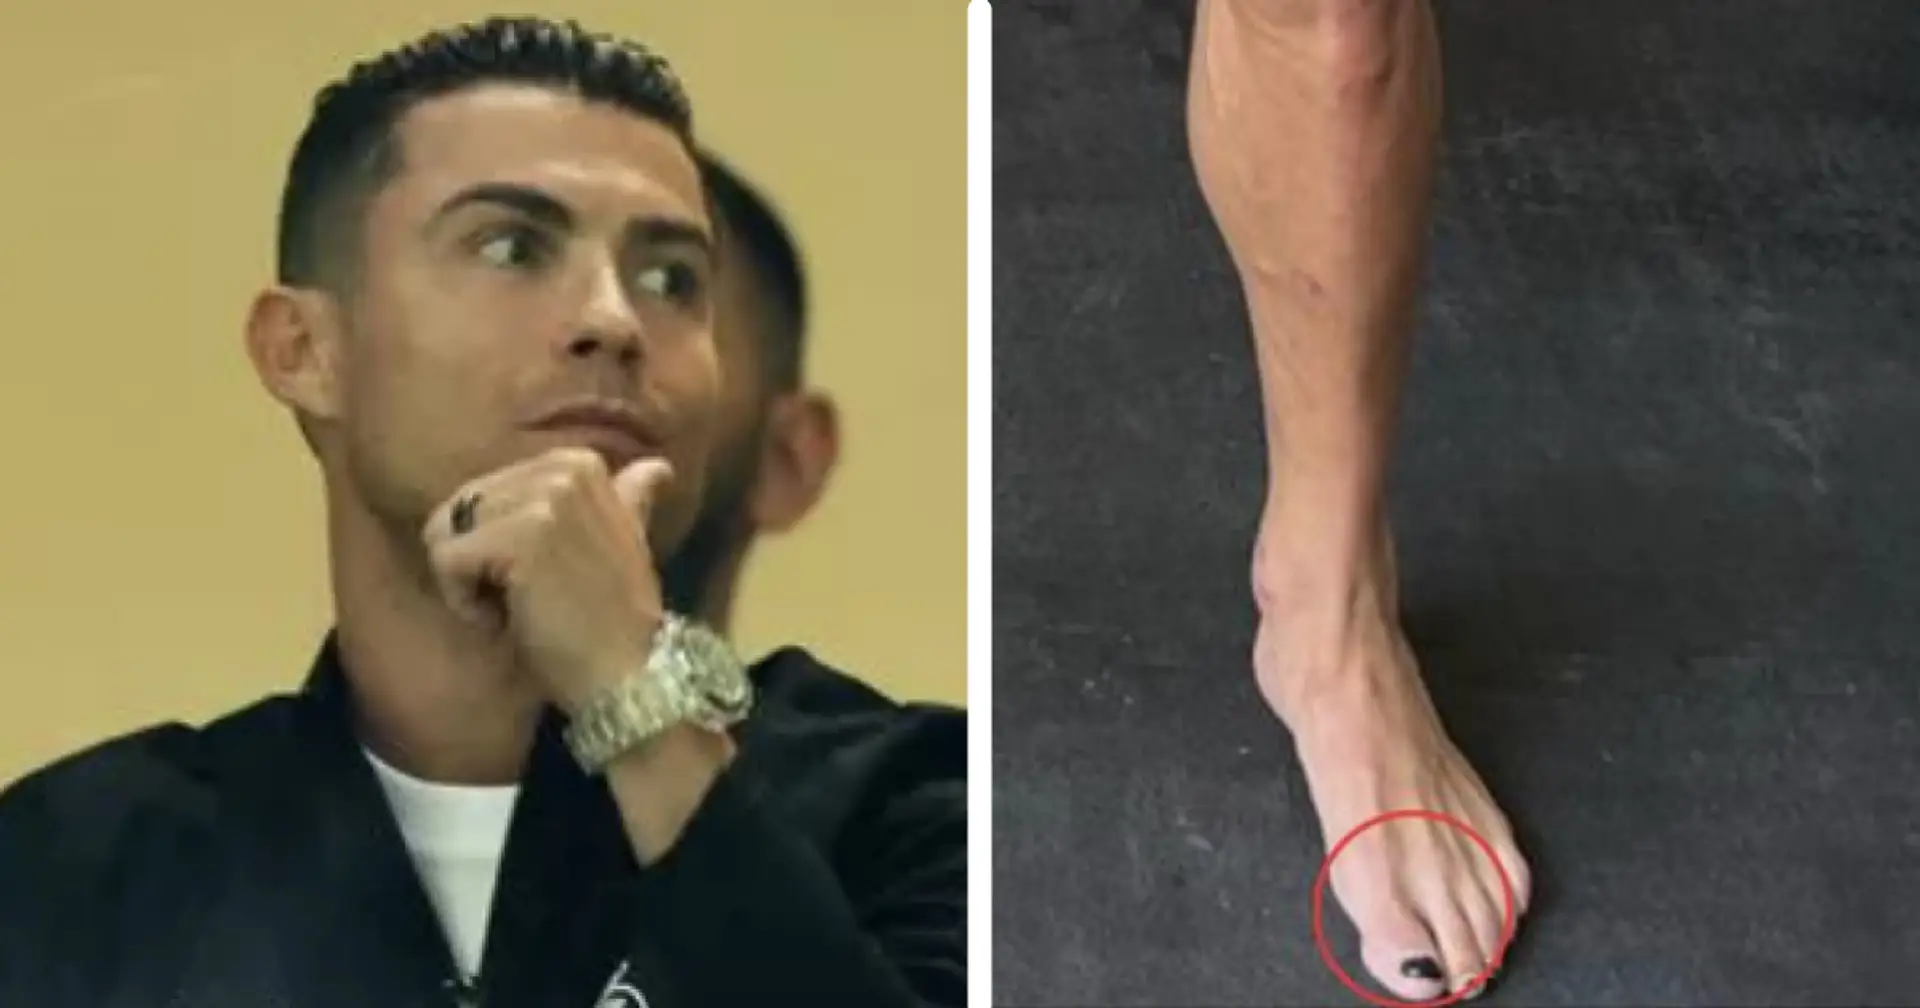 Why Cristiano Ronaldo wears nail polish explained